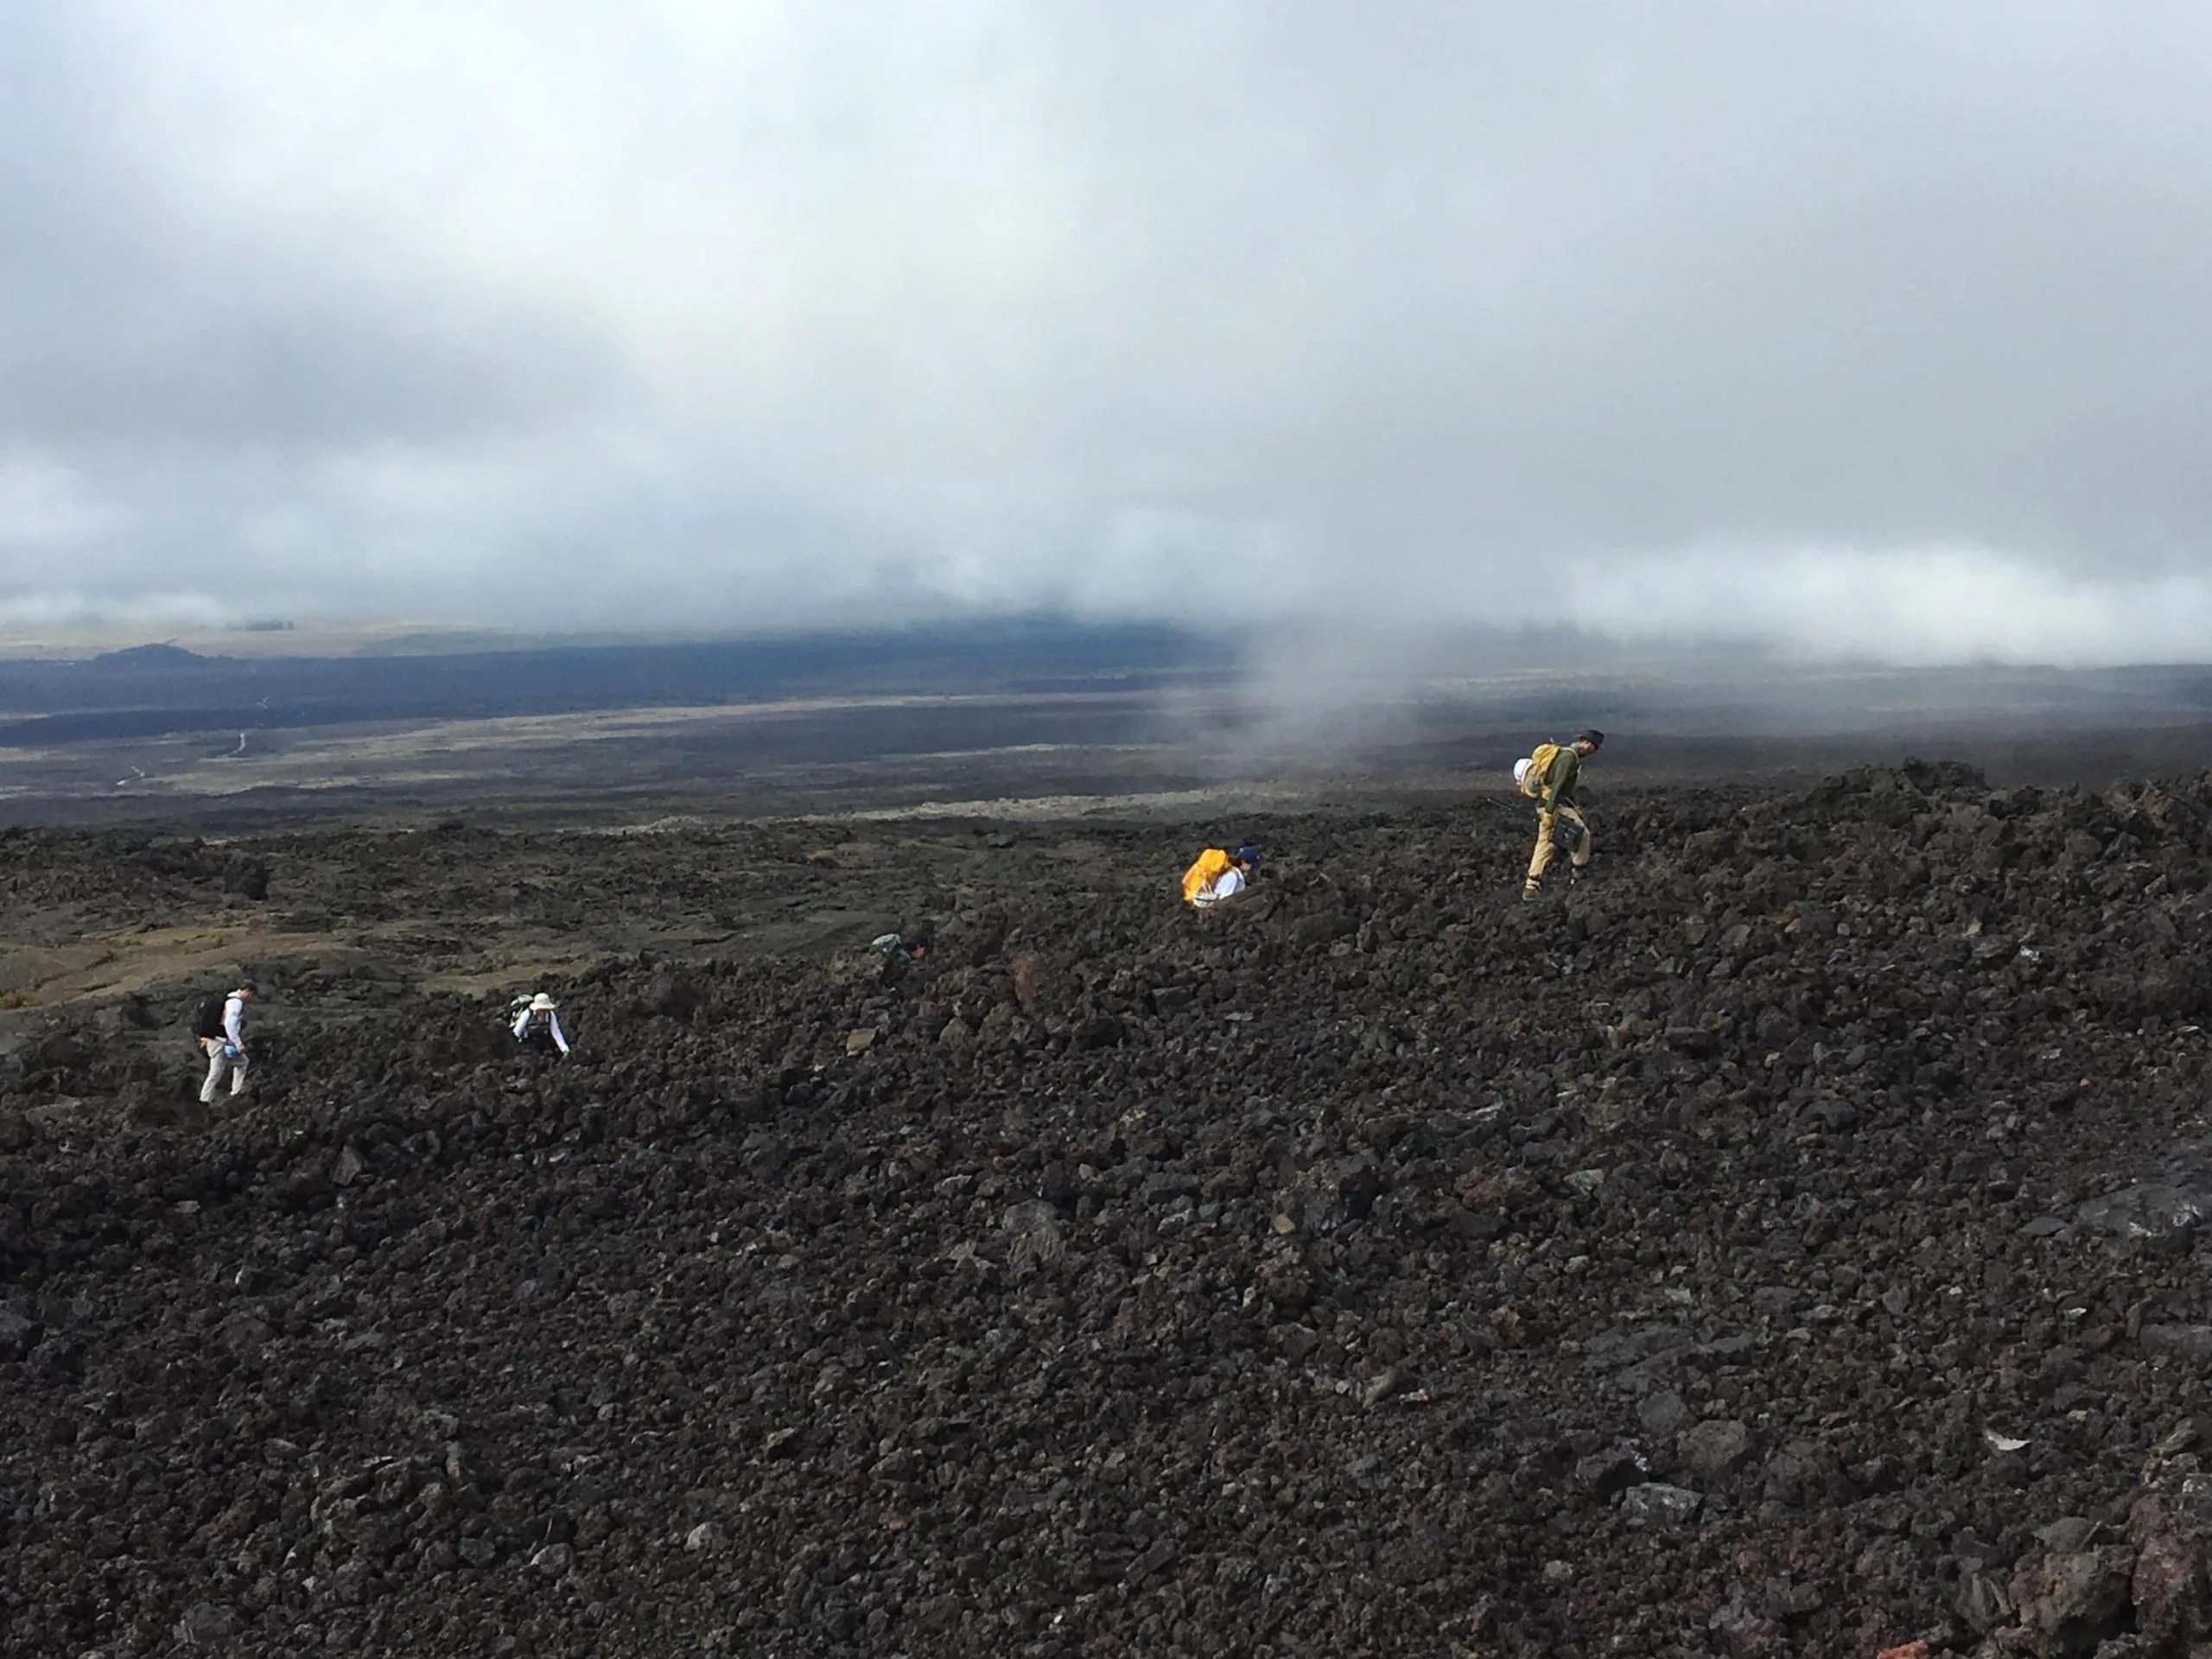 Científicos descienden a un túnel de lava en Mauna Loa, Hawái, para estudiar los microbios y minerales de su interior.